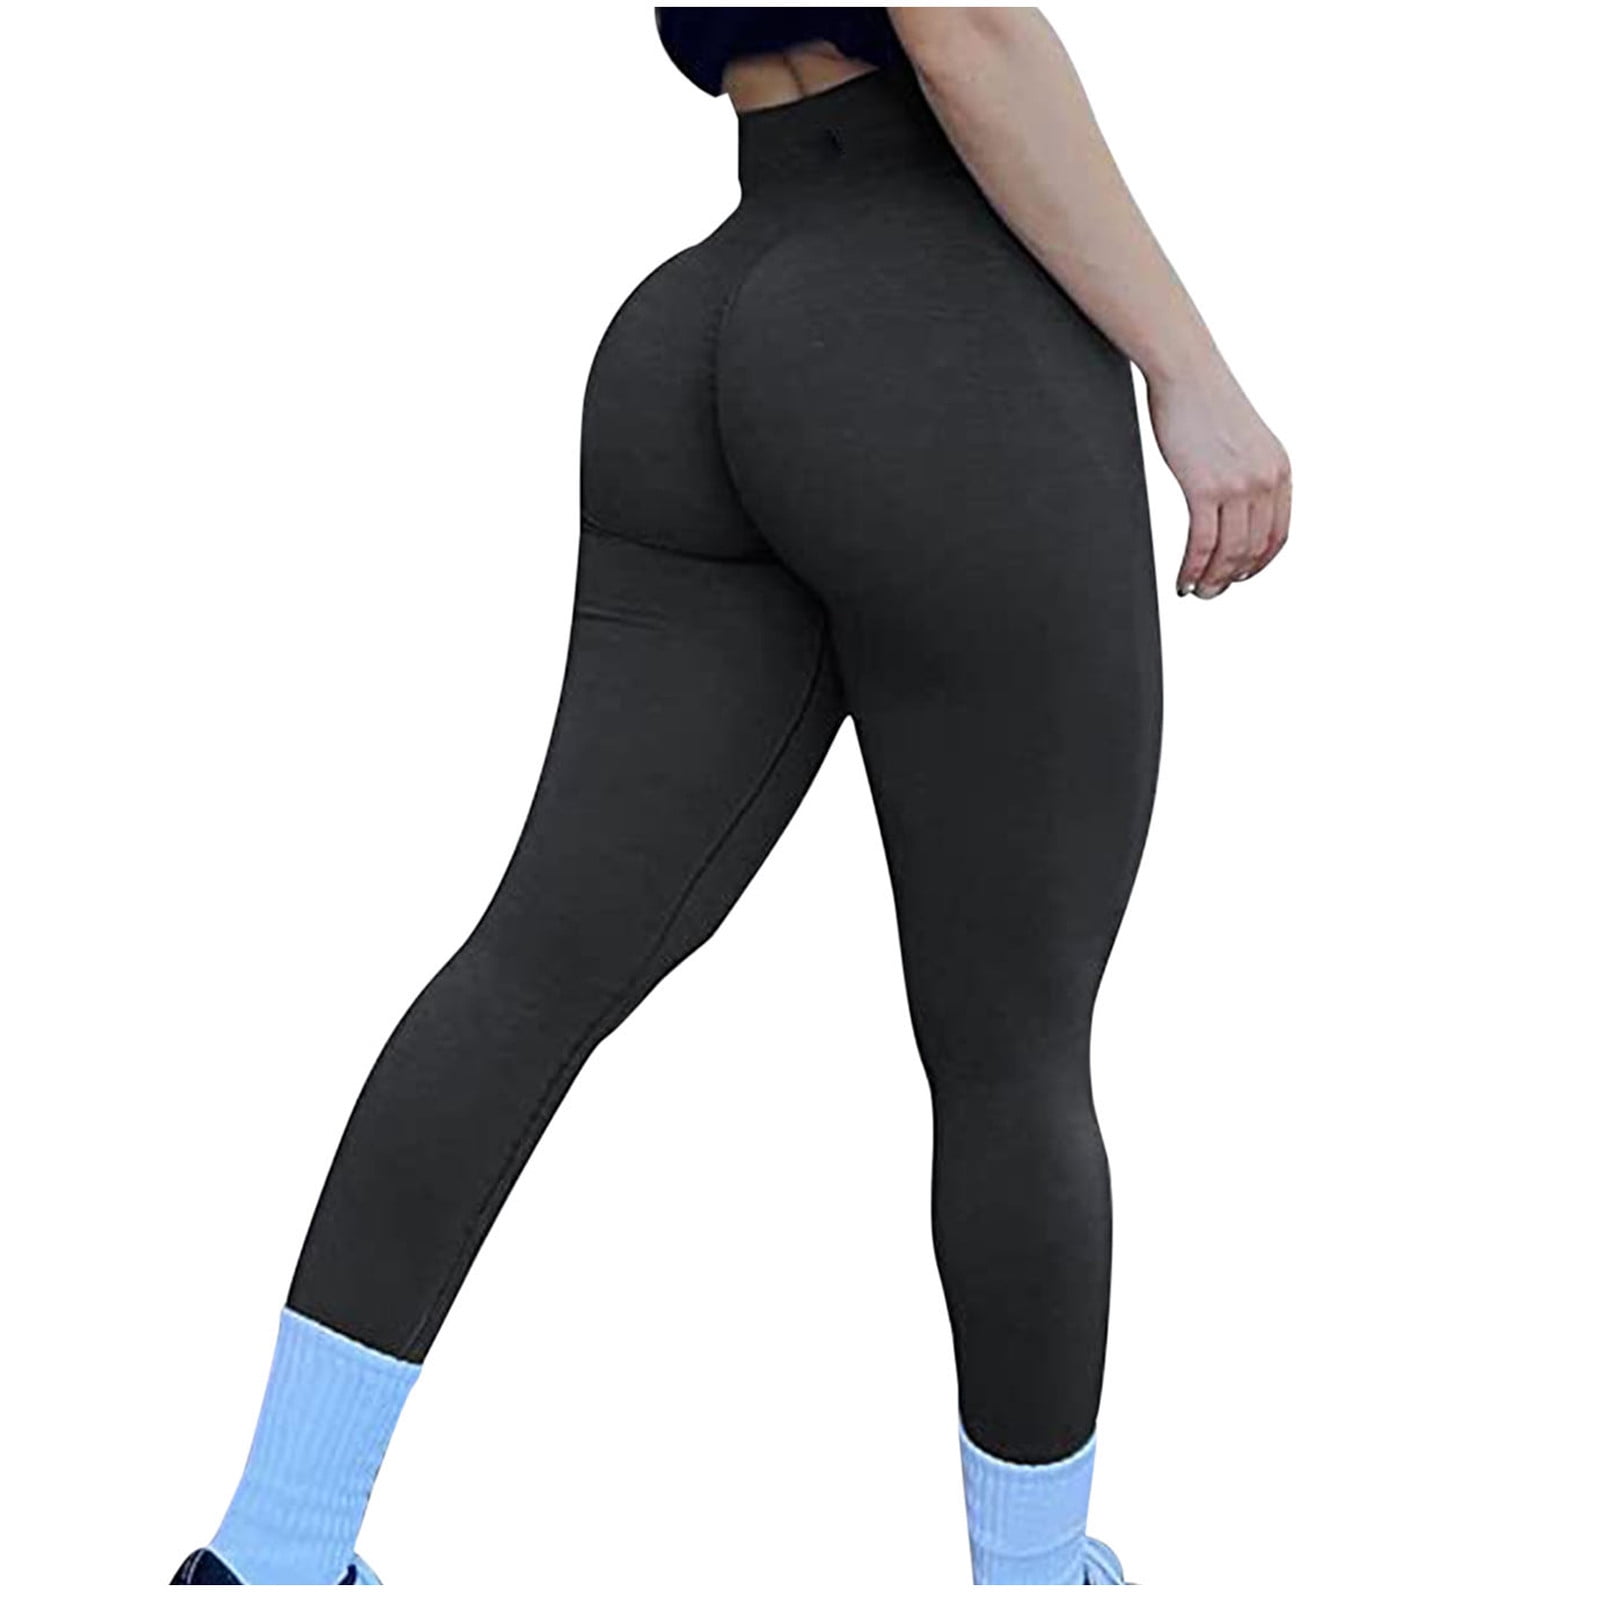 XFLWAM Scrunch Butt Lifting Workout Leggings for Women Seamless